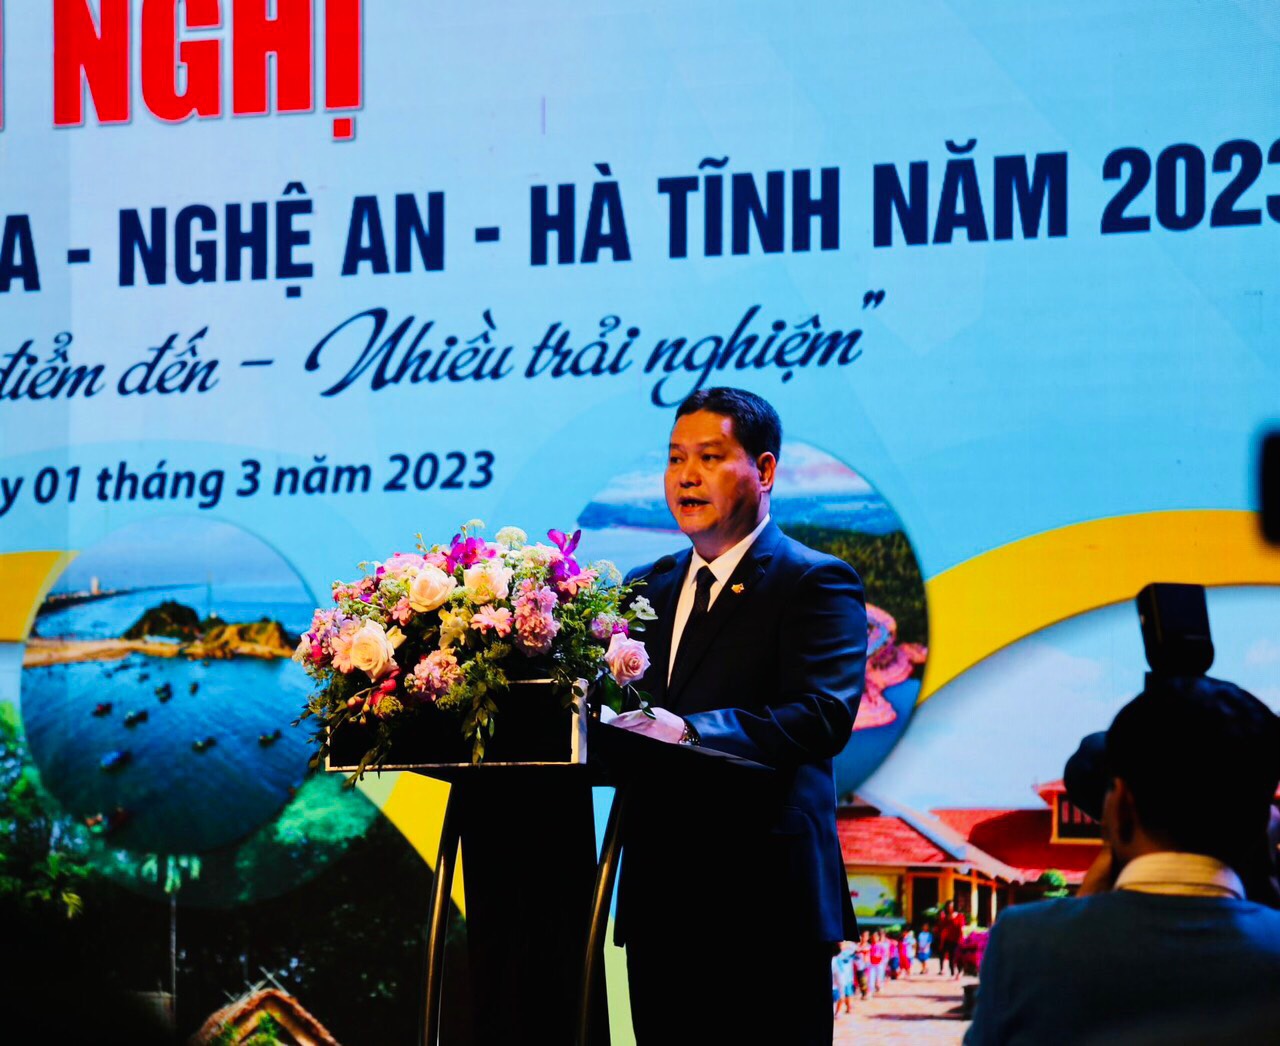 Ông Phạm Nguyên Hồng, Giám đốc Sở  Văn hóa, Thể thao và Du lịch Thanh Hóa phát biểu khai mạc hội nghị